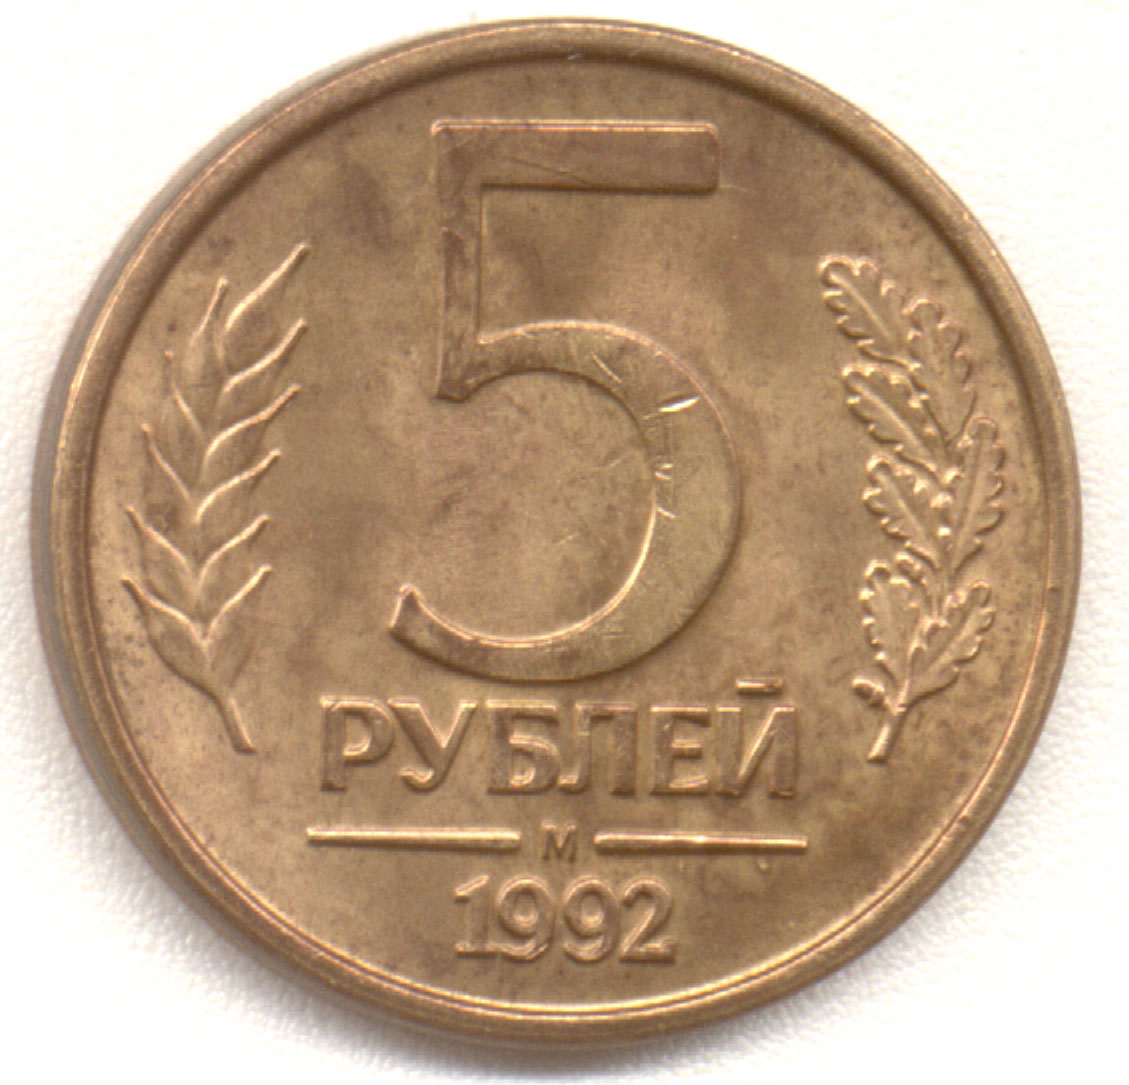 7 5 в рублях. 5 Рублей 1992 года м. Монета 1043 года.